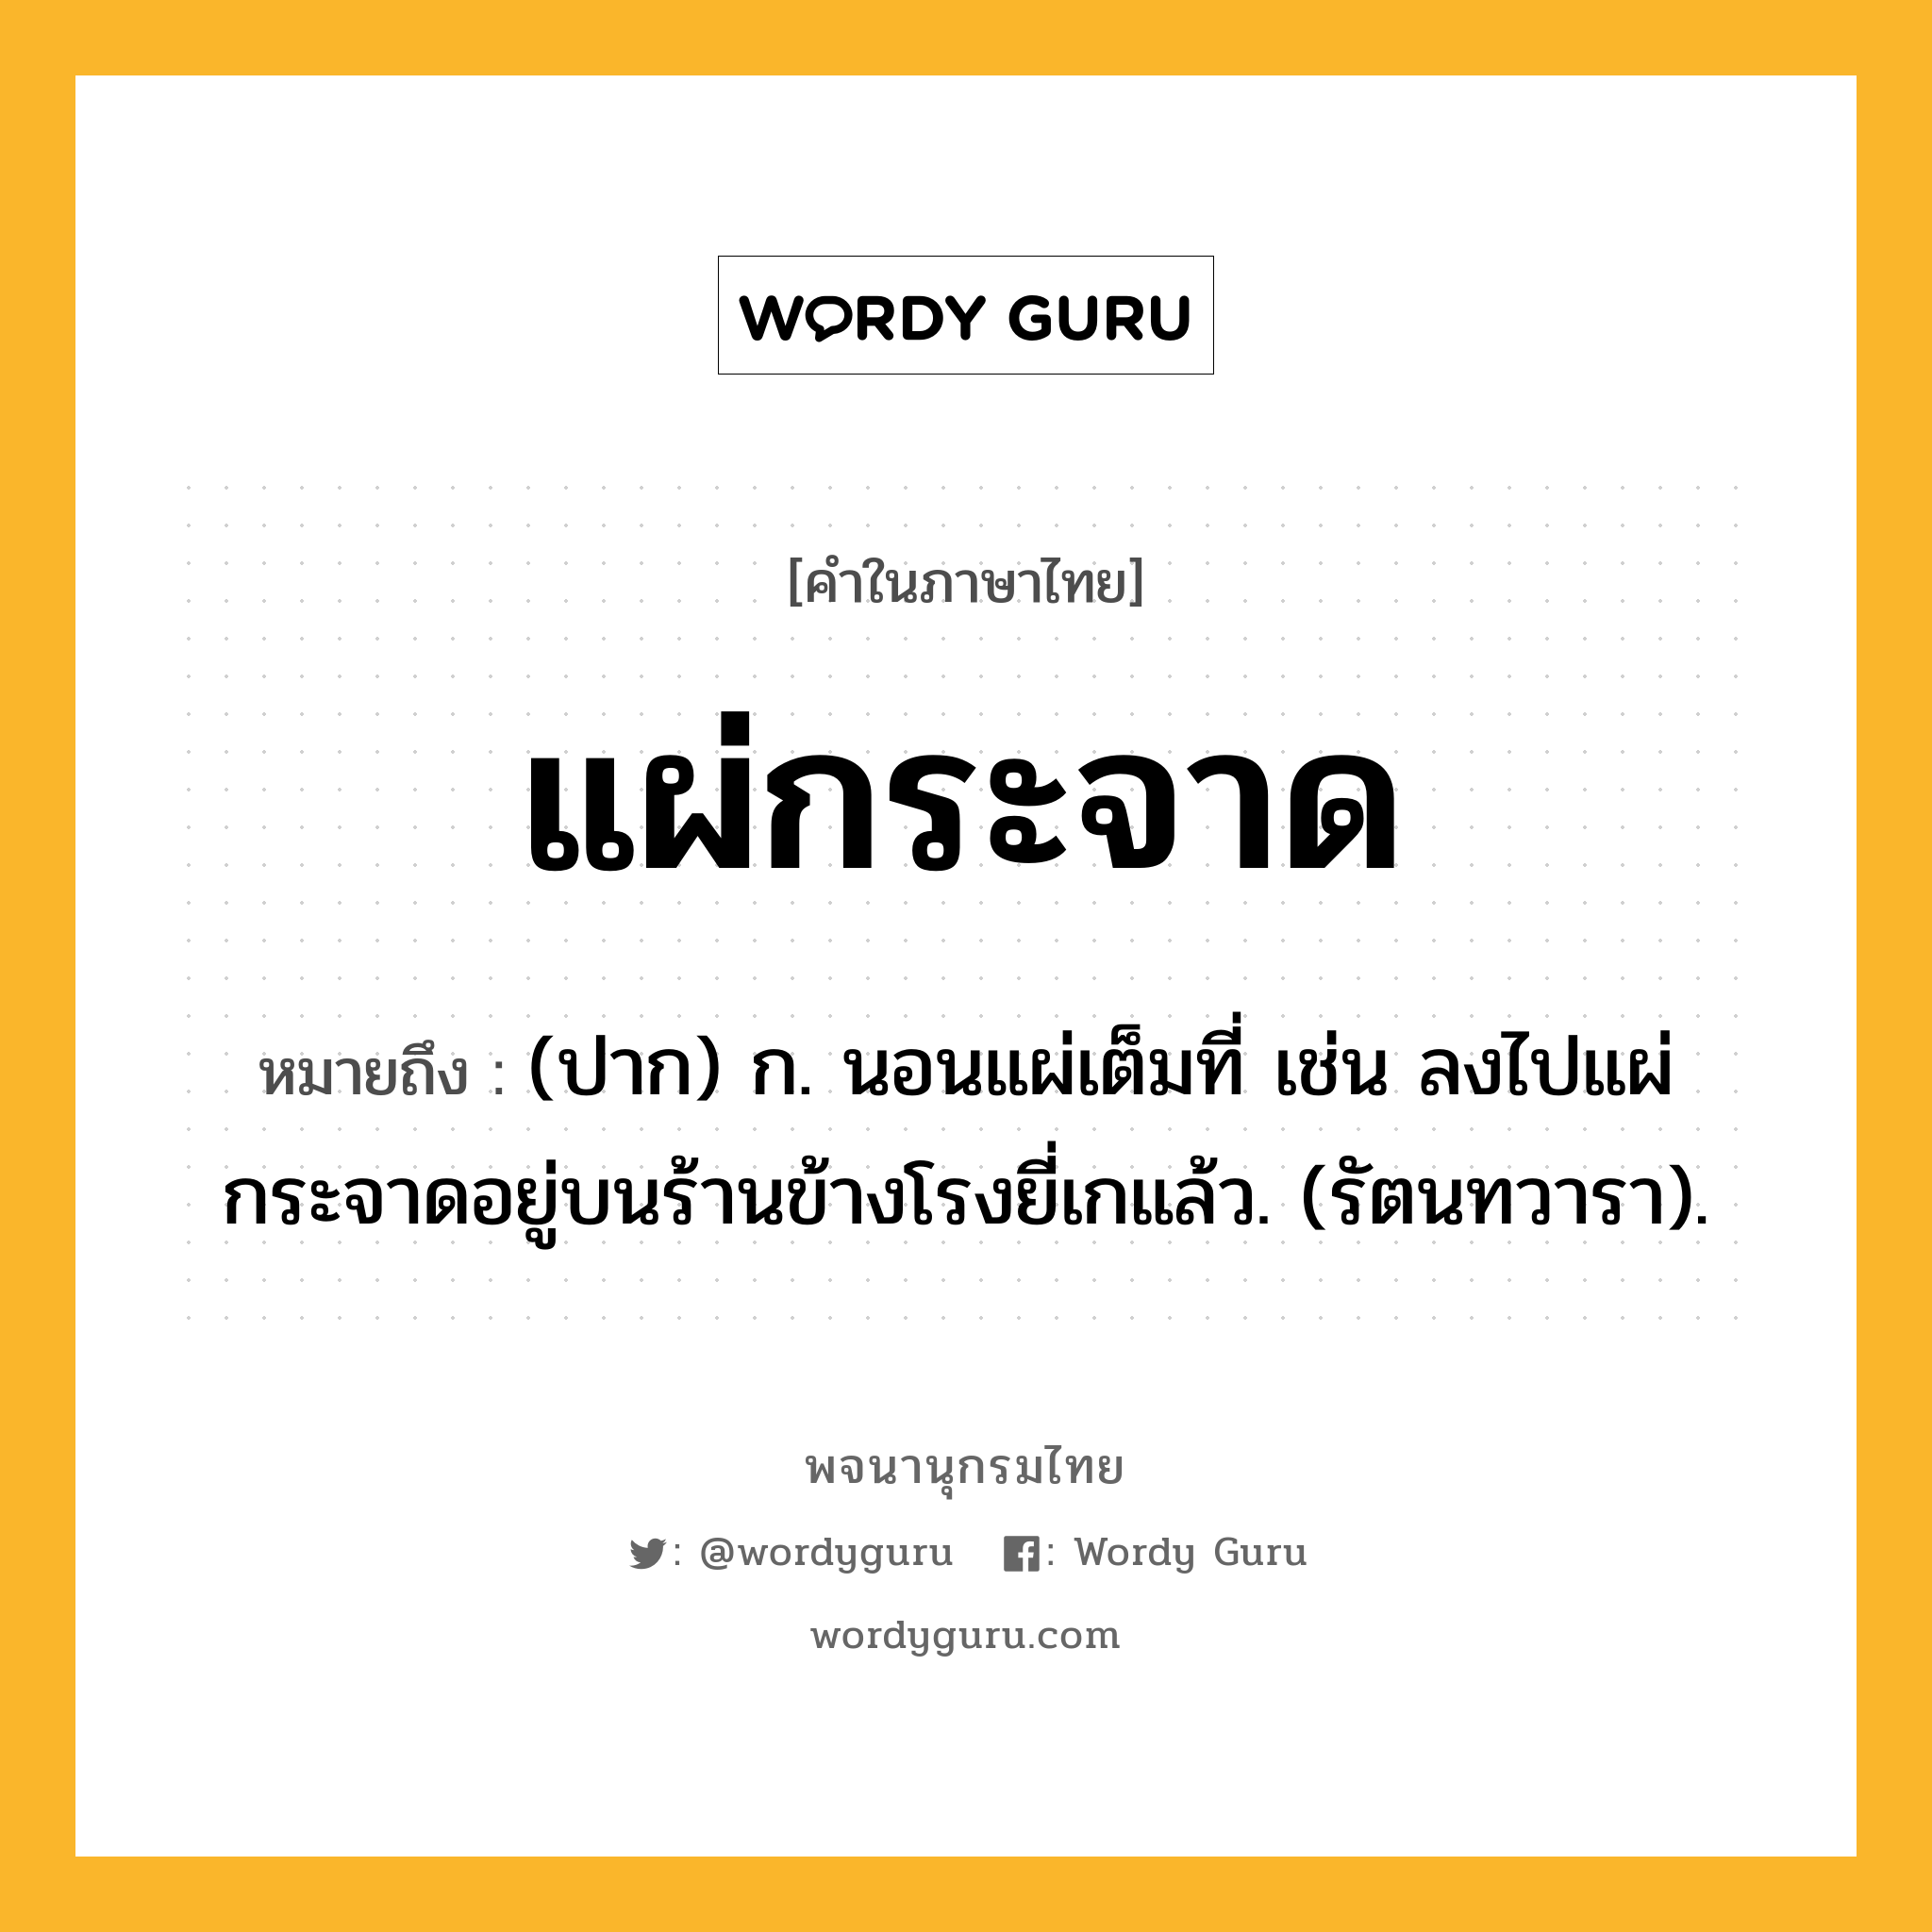 แผ่กระจาด หมายถึงอะไร?, คำในภาษาไทย แผ่กระจาด หมายถึง (ปาก) ก. นอนแผ่เต็มที่ เช่น ลงไปแผ่กระจาดอยู่บนร้านข้างโรงยี่เกแล้ว. (รัตนทวารา).